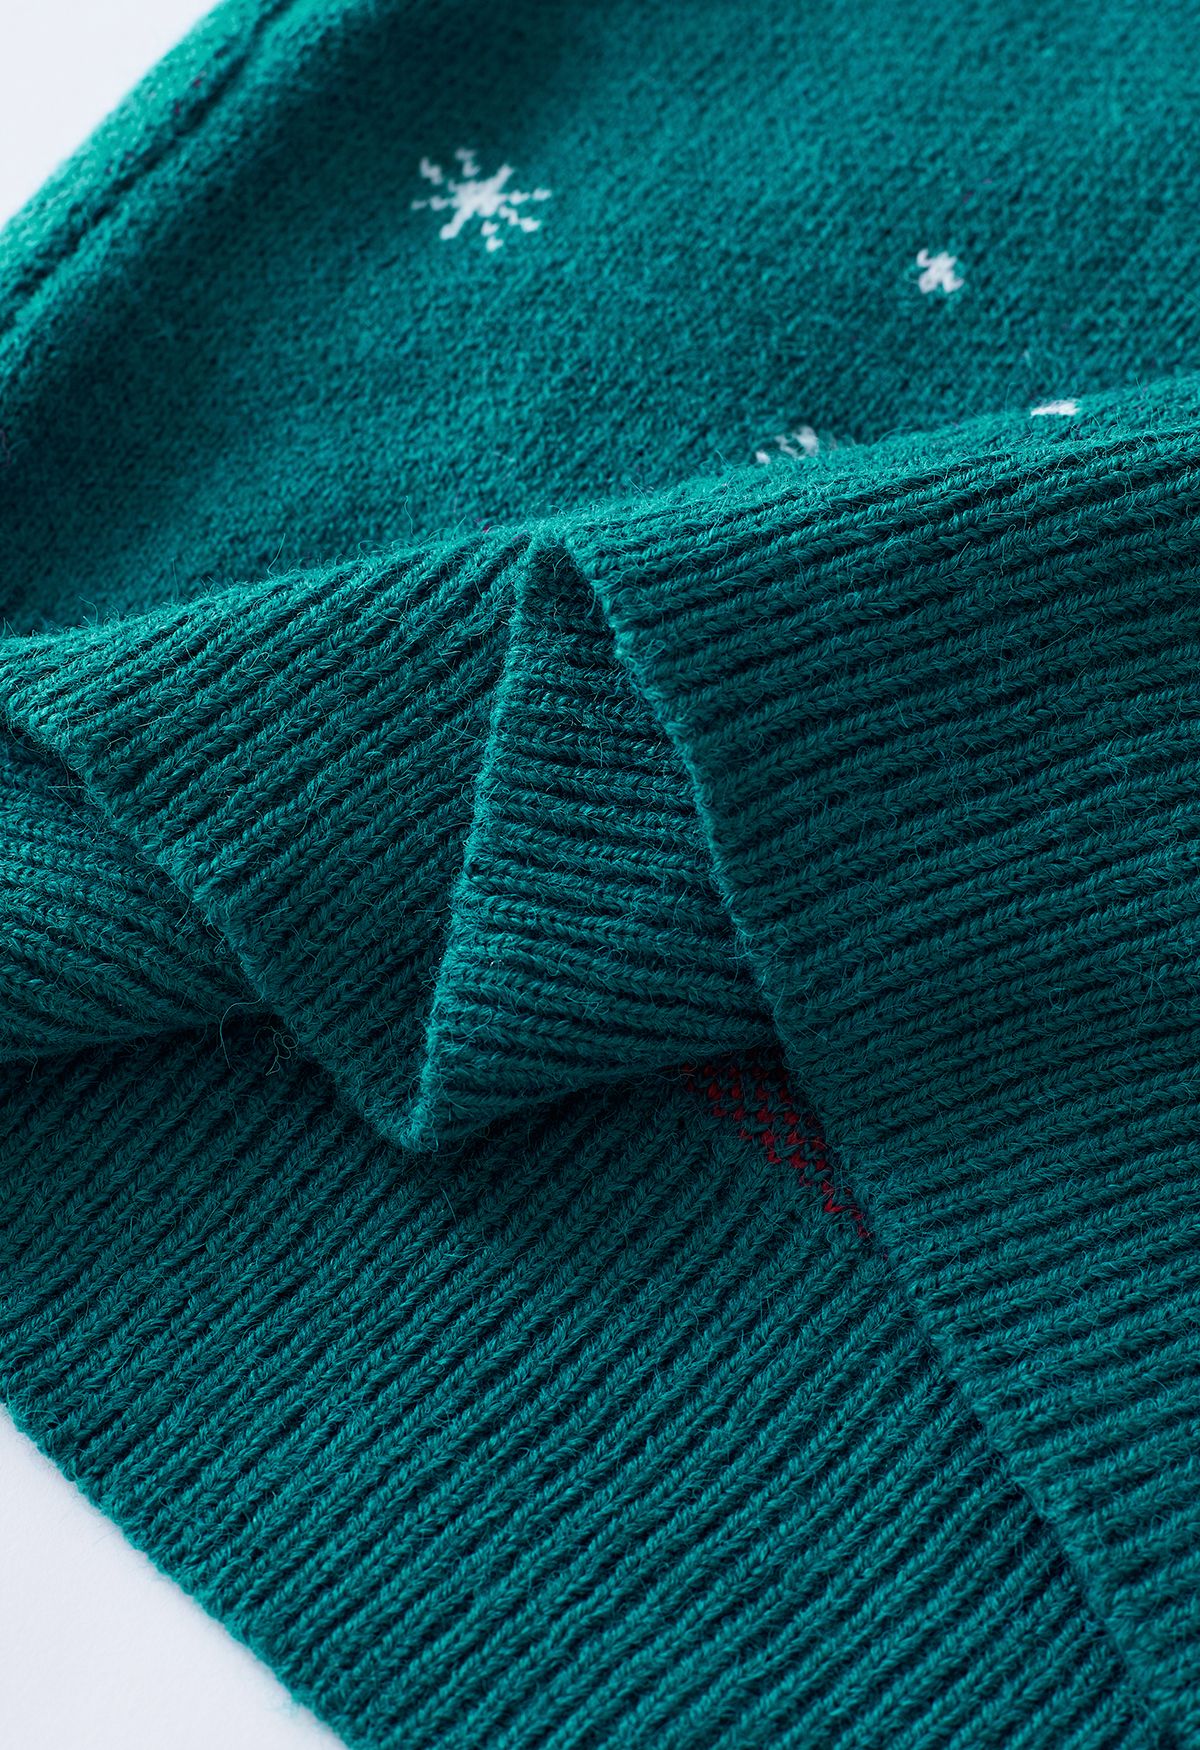 Maglione lavorato a maglia con fiocco di neve della calza di Natale